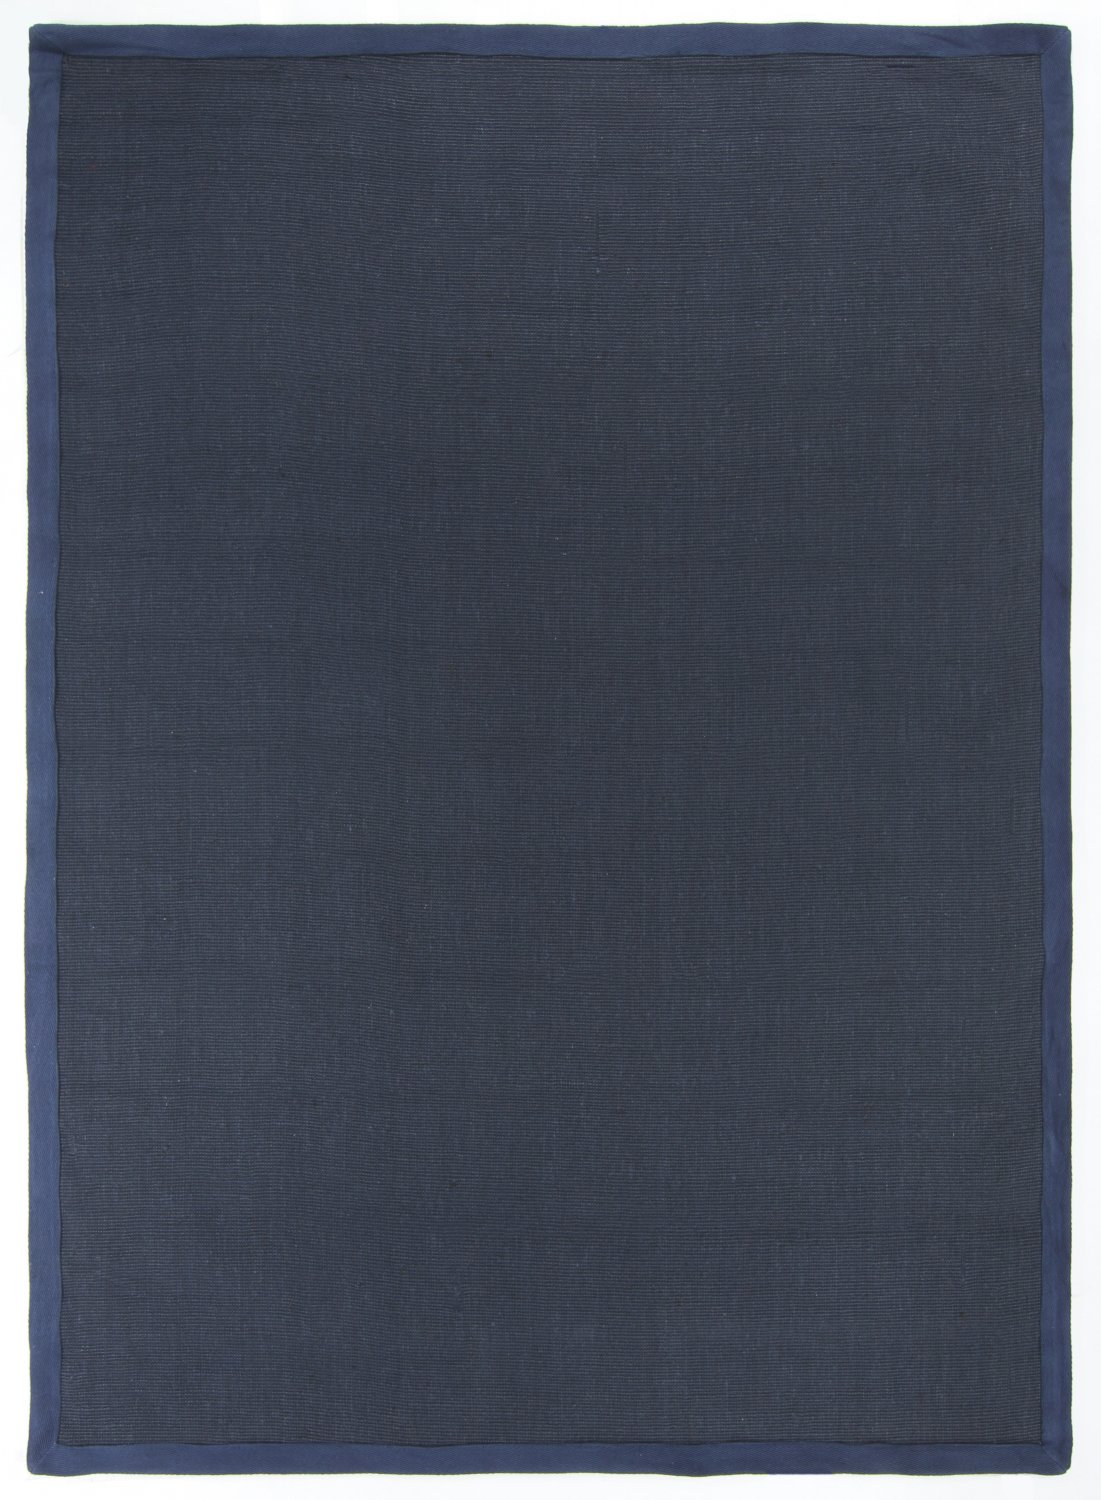 Sisalmatta - Agave (mörkblå)